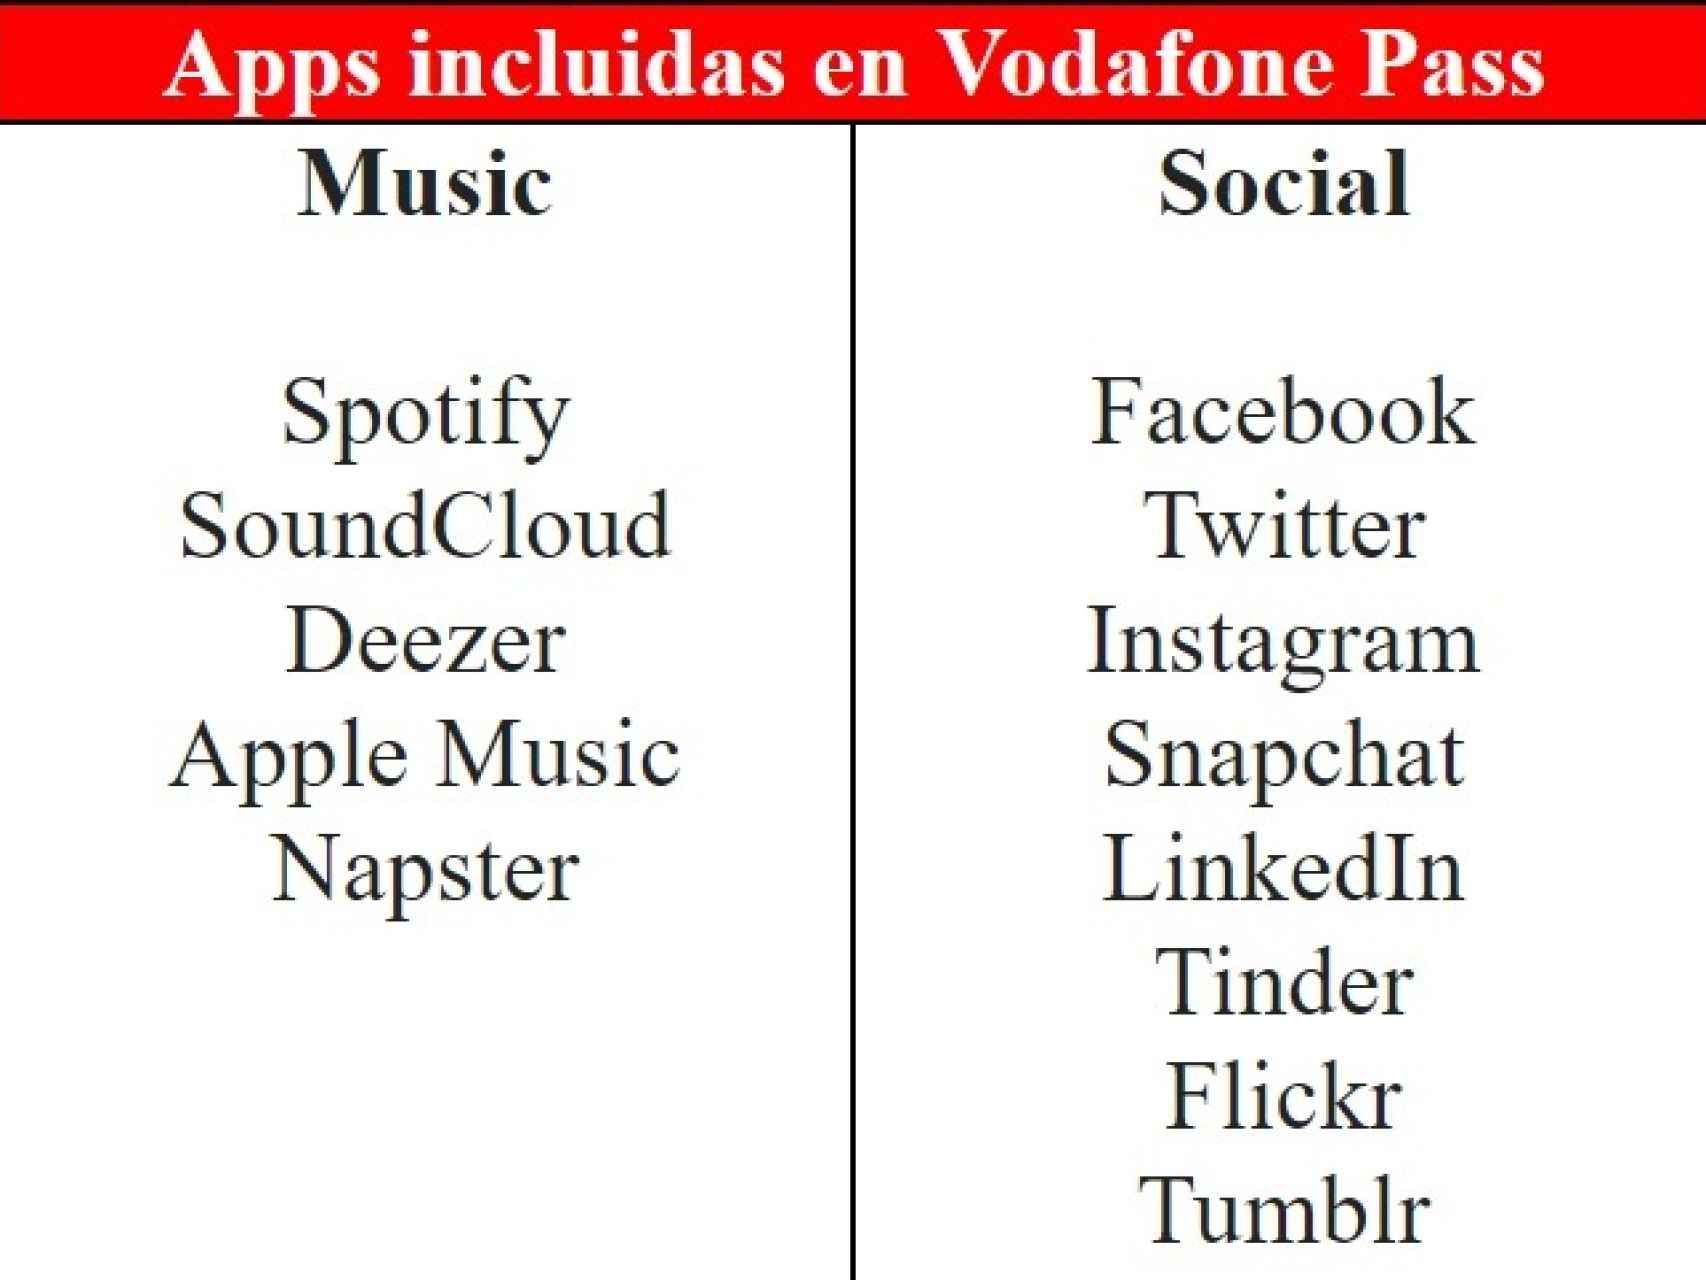 Aplicaciones incluídas en Vodafone Pass